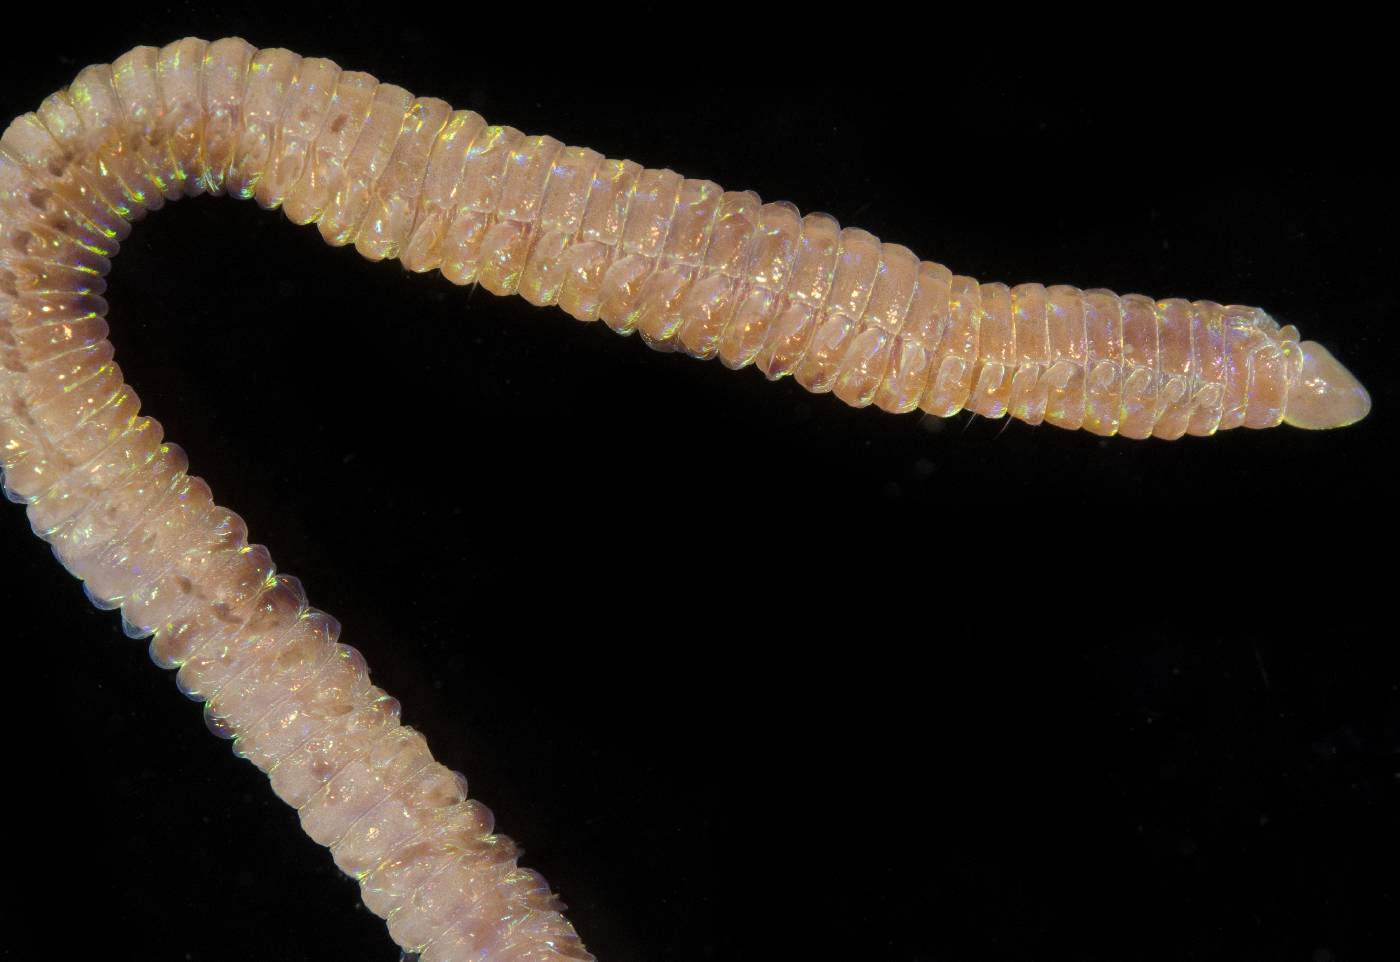 Lumbrineridae image